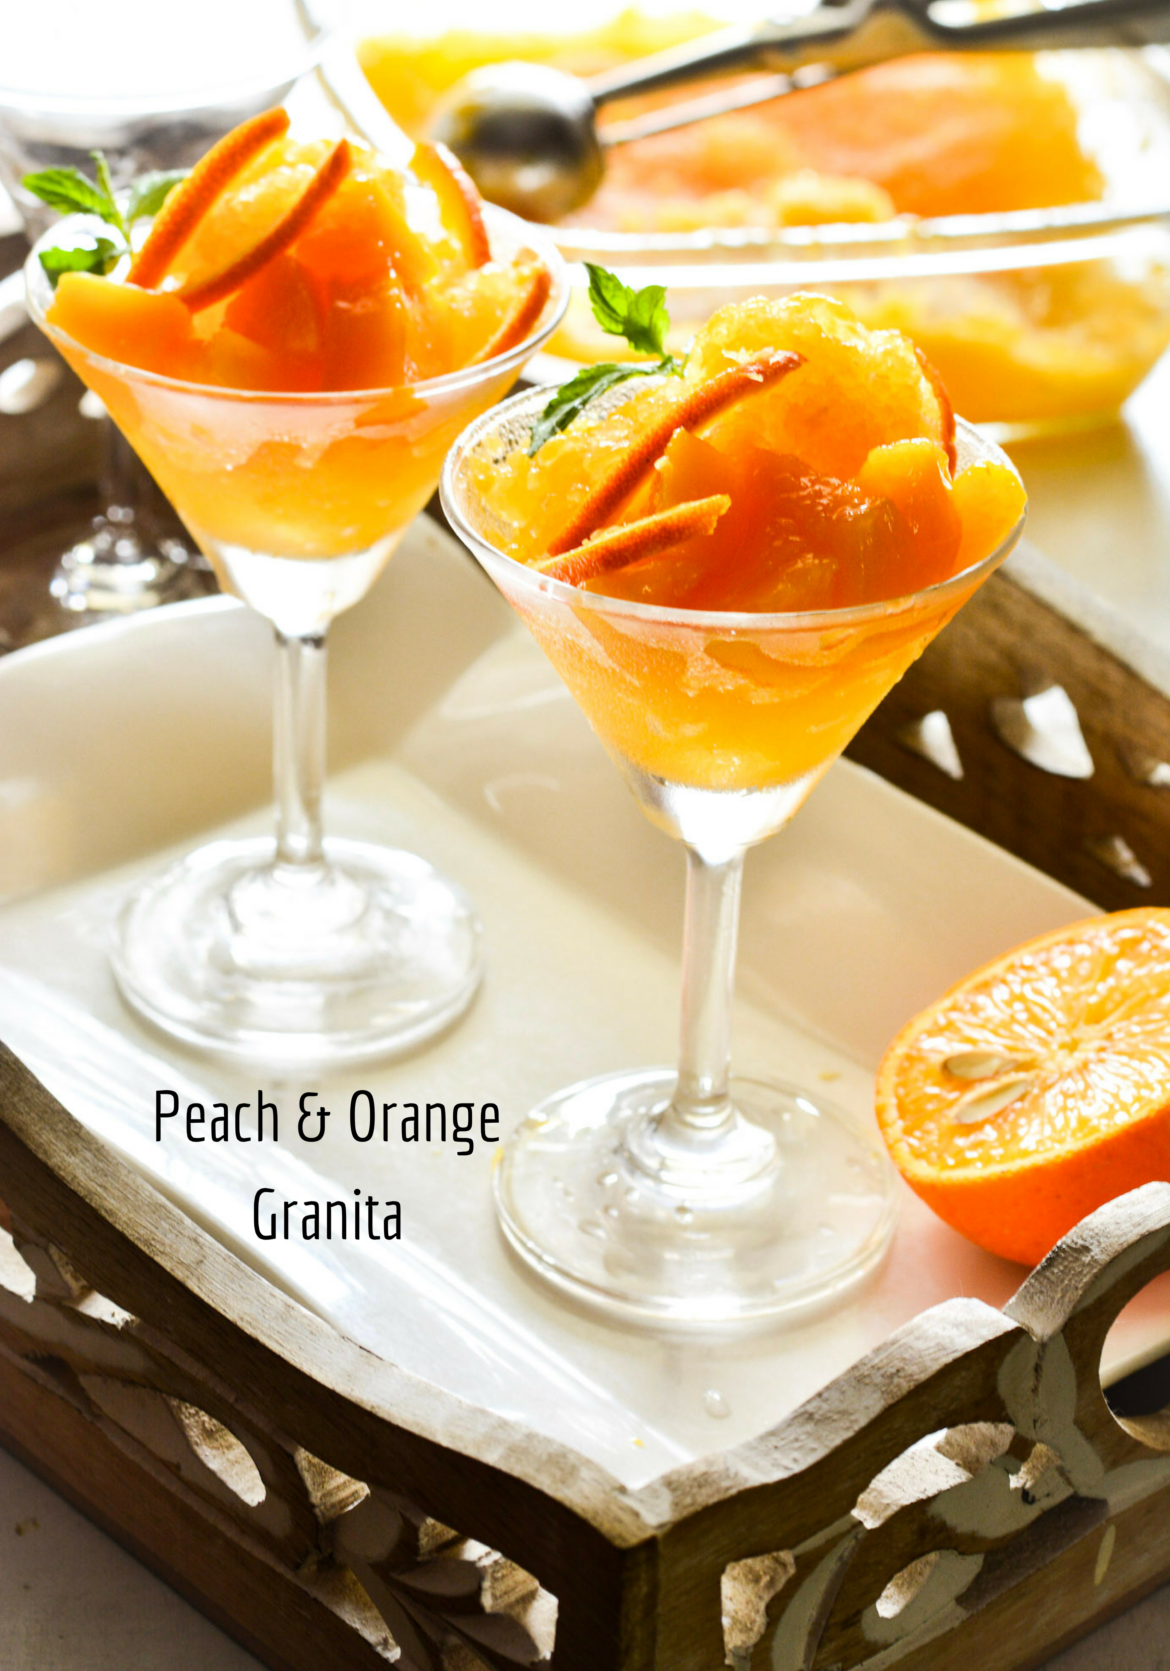 Peach & Orange Granita